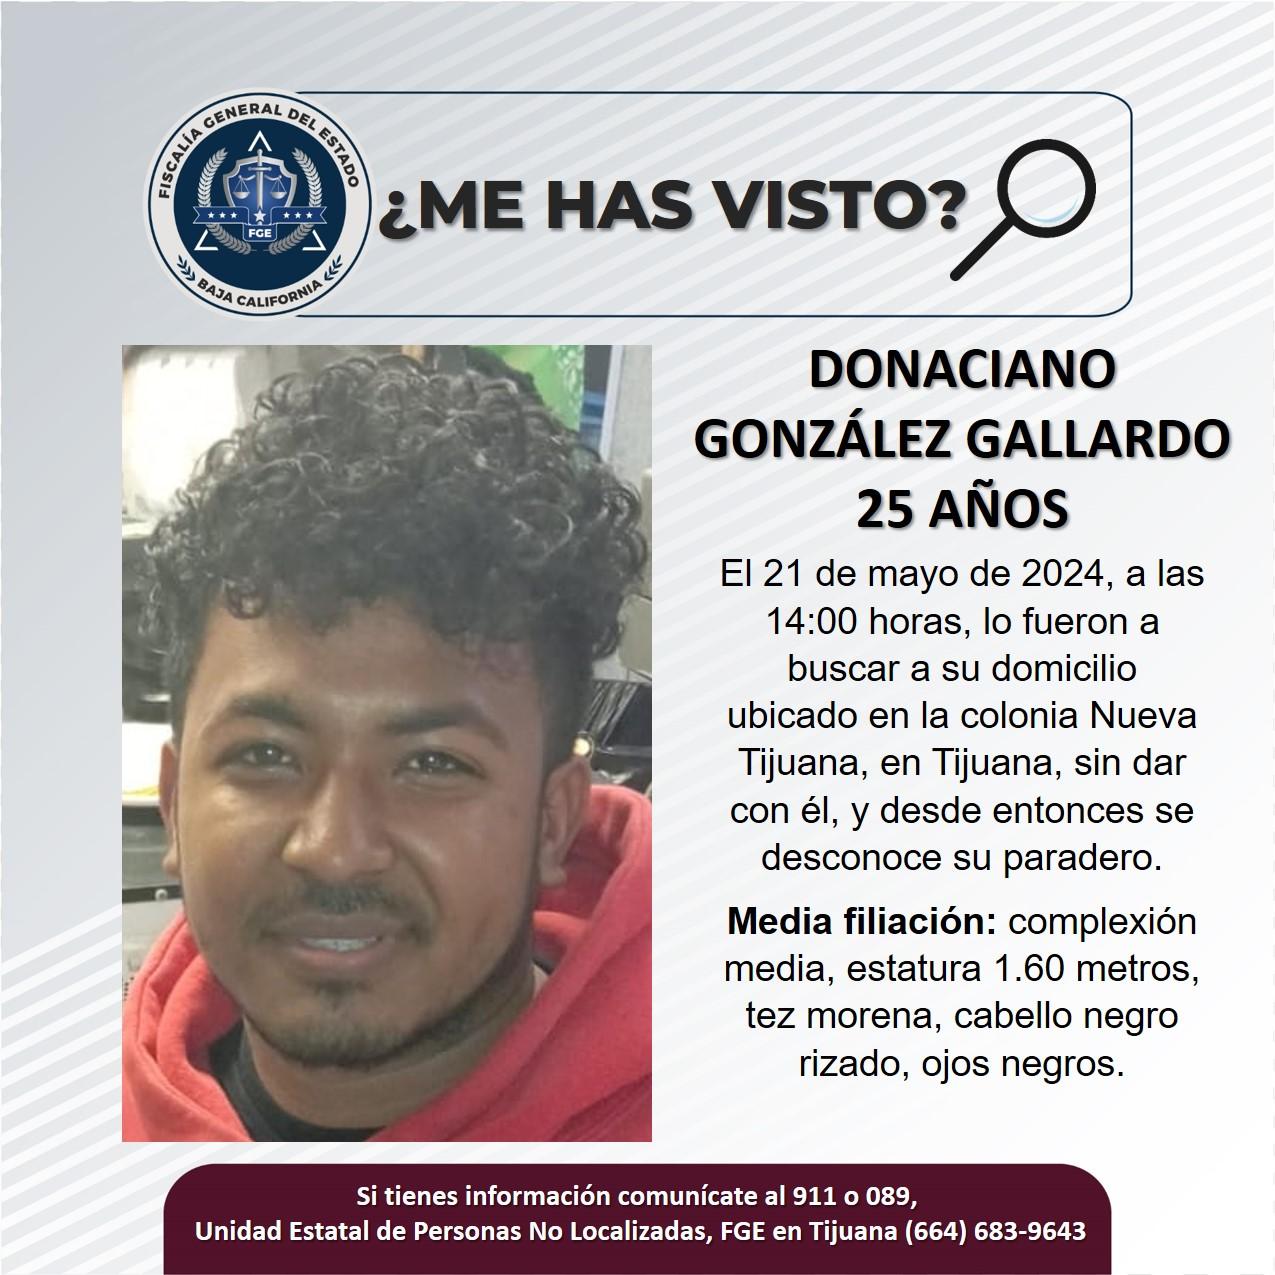 Servicio social: Se busca a Donaciano González Gallardo de 25 años de edad